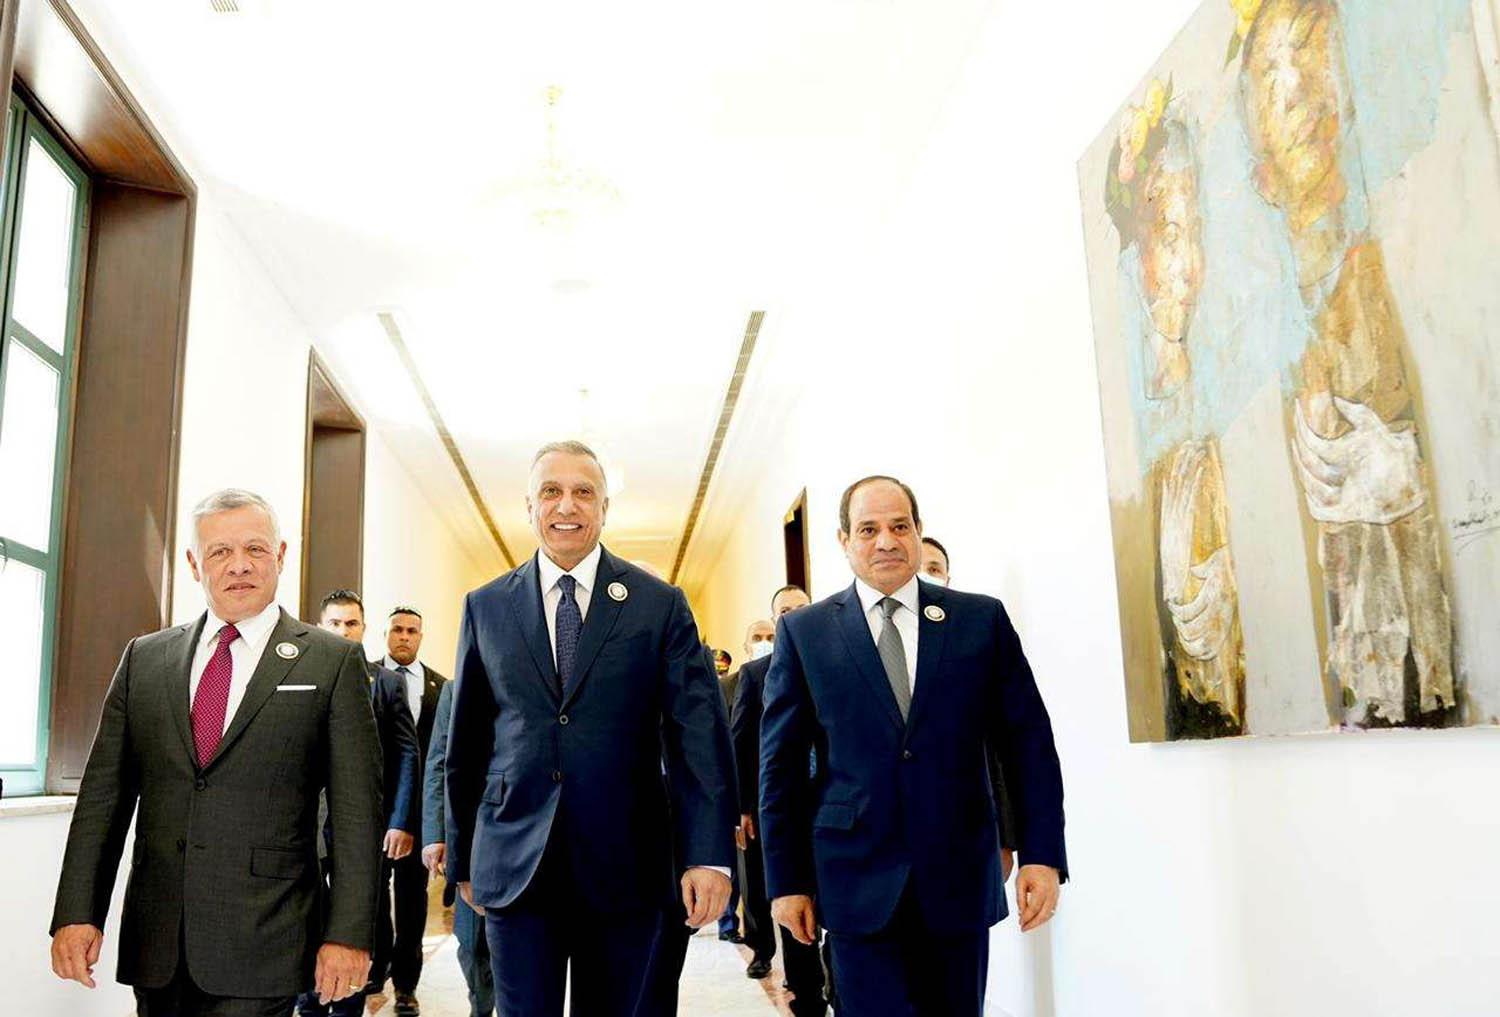 رئيس الوزراء العراقي مصطفى الكاظمي يستضيف العاهل الأردني الملك عبدالله الثاني والرئيس المصري عبدالفتاح السيسي في بغداد